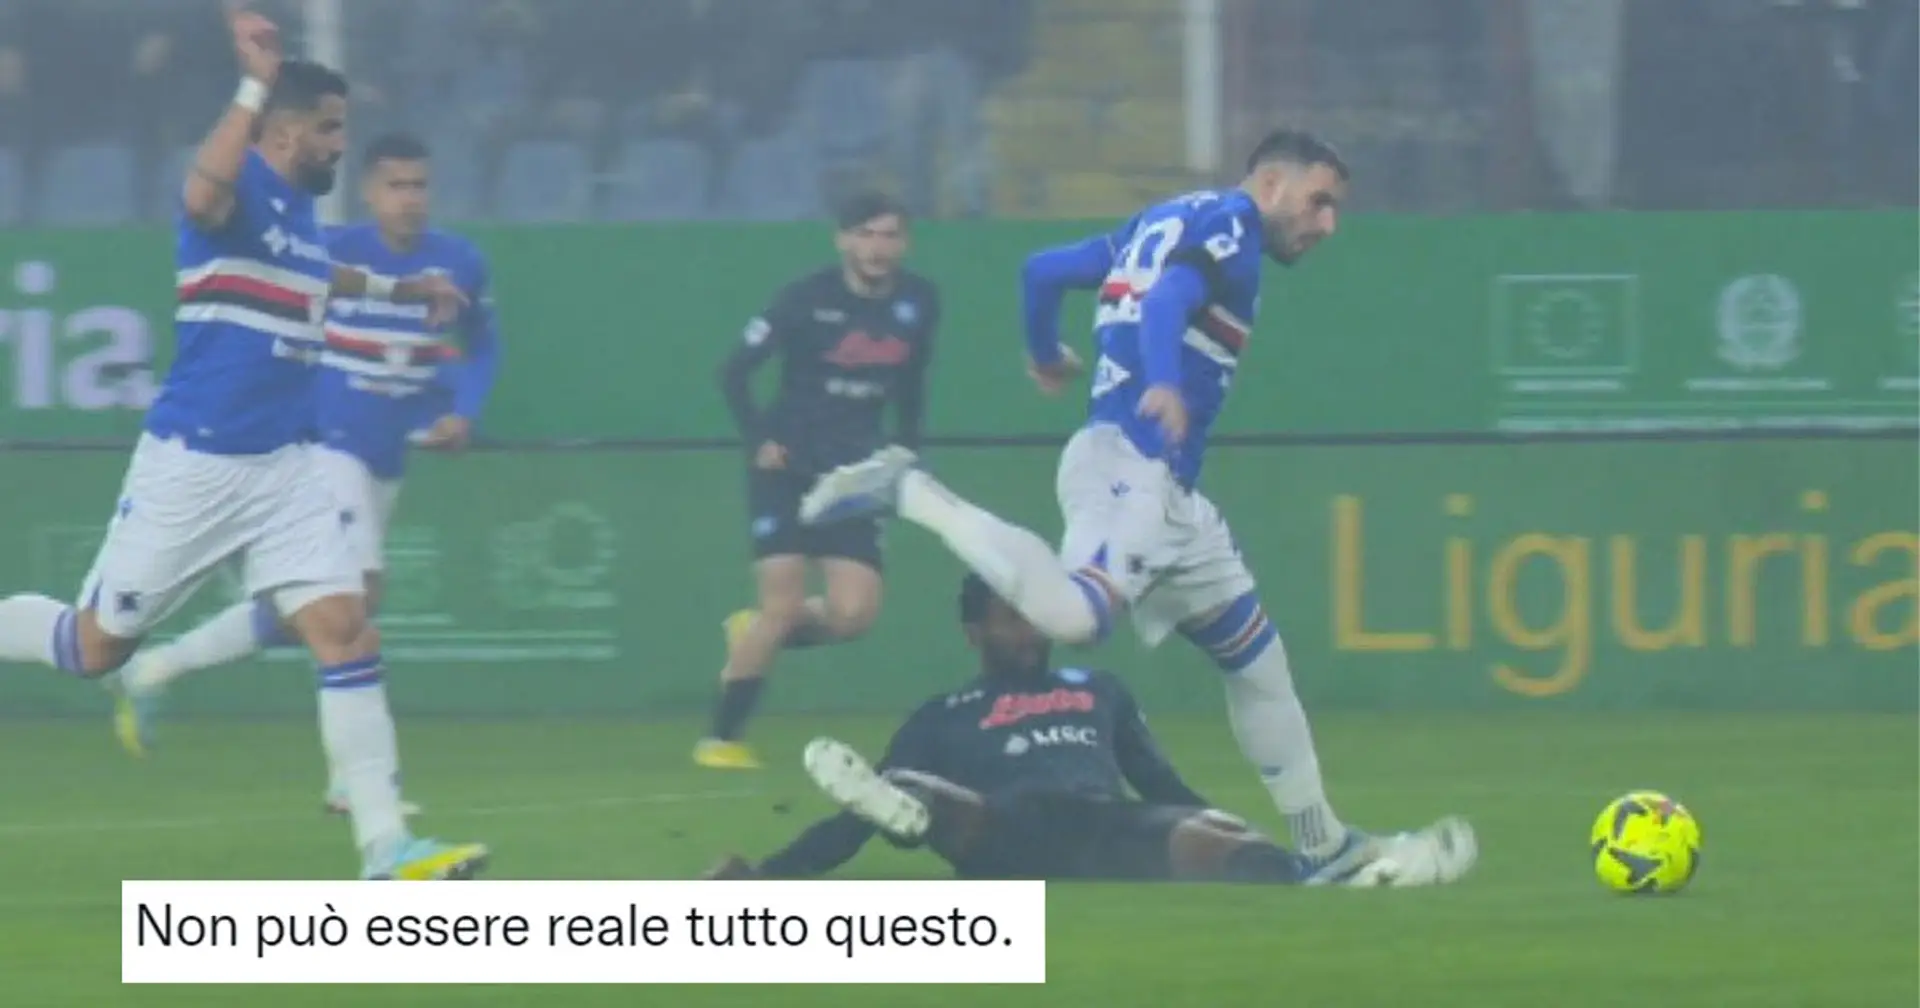 "Non può essere reale tutto questo", la furia dei tifosi dell'Inter dopo l'arbitraggio di Sampdoria-Napoli